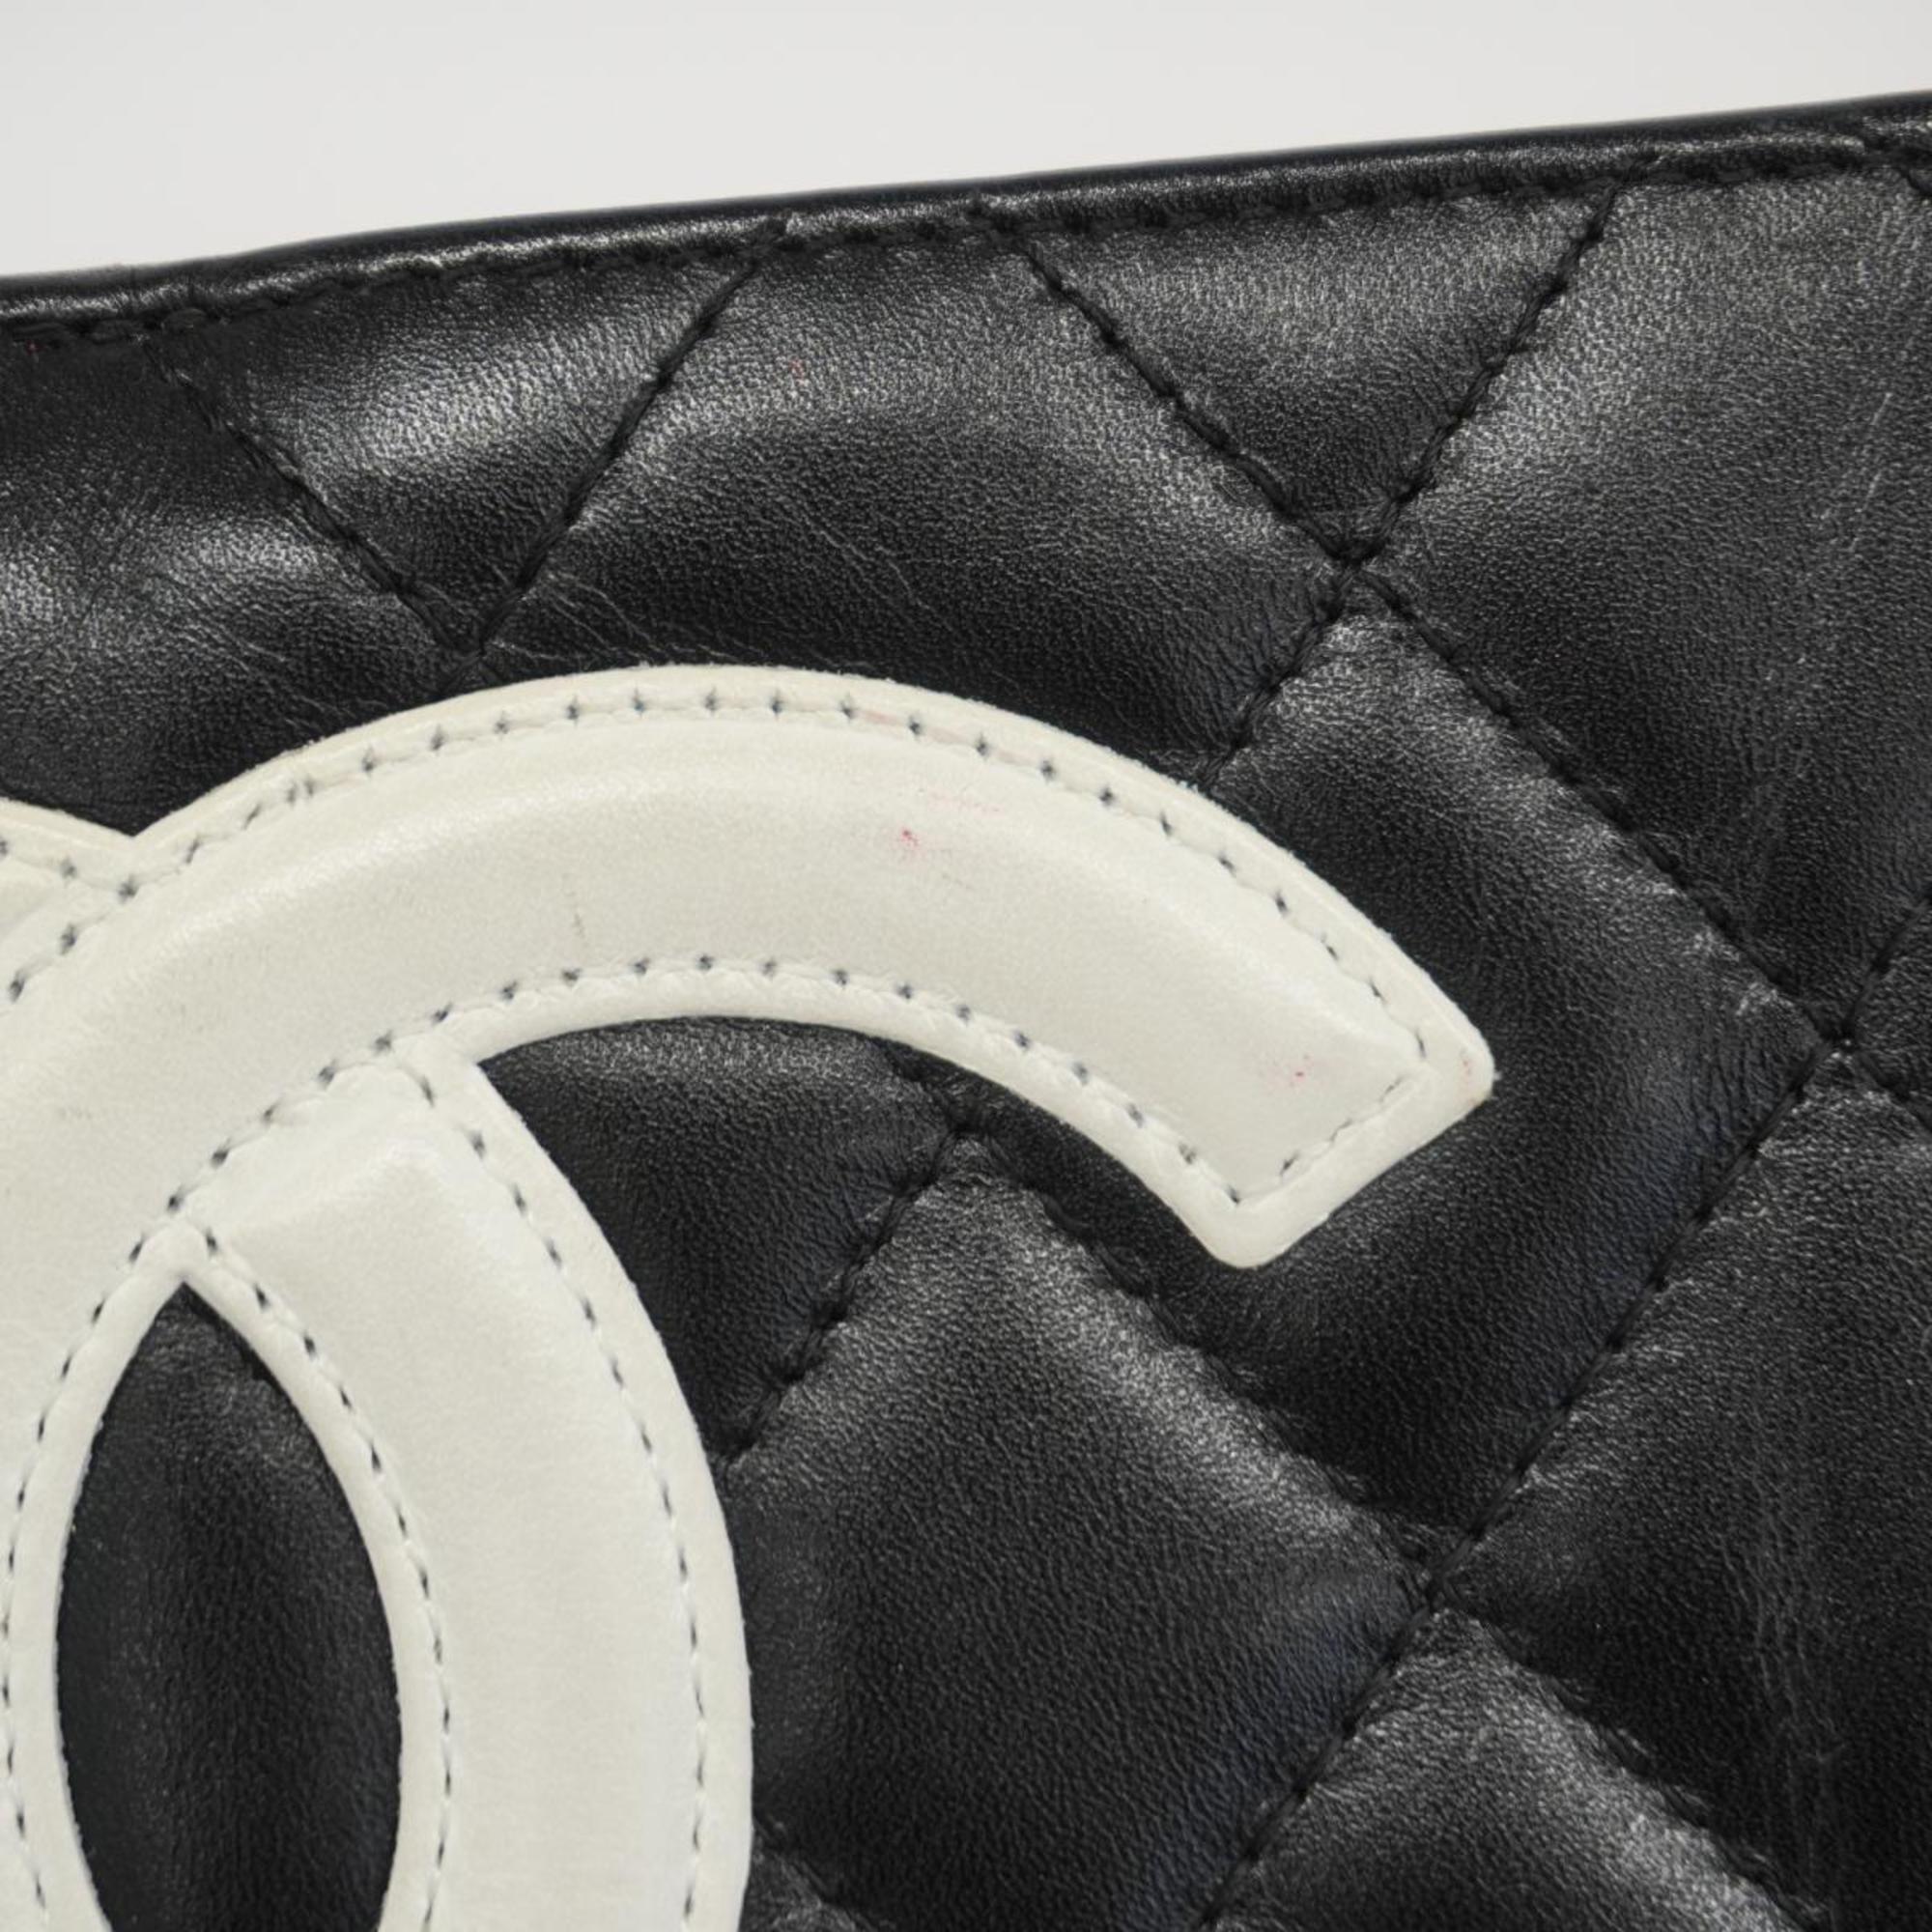 シャネル(Chanel) シャネル 財布 カンボン ラムスキン ブラック   レディース